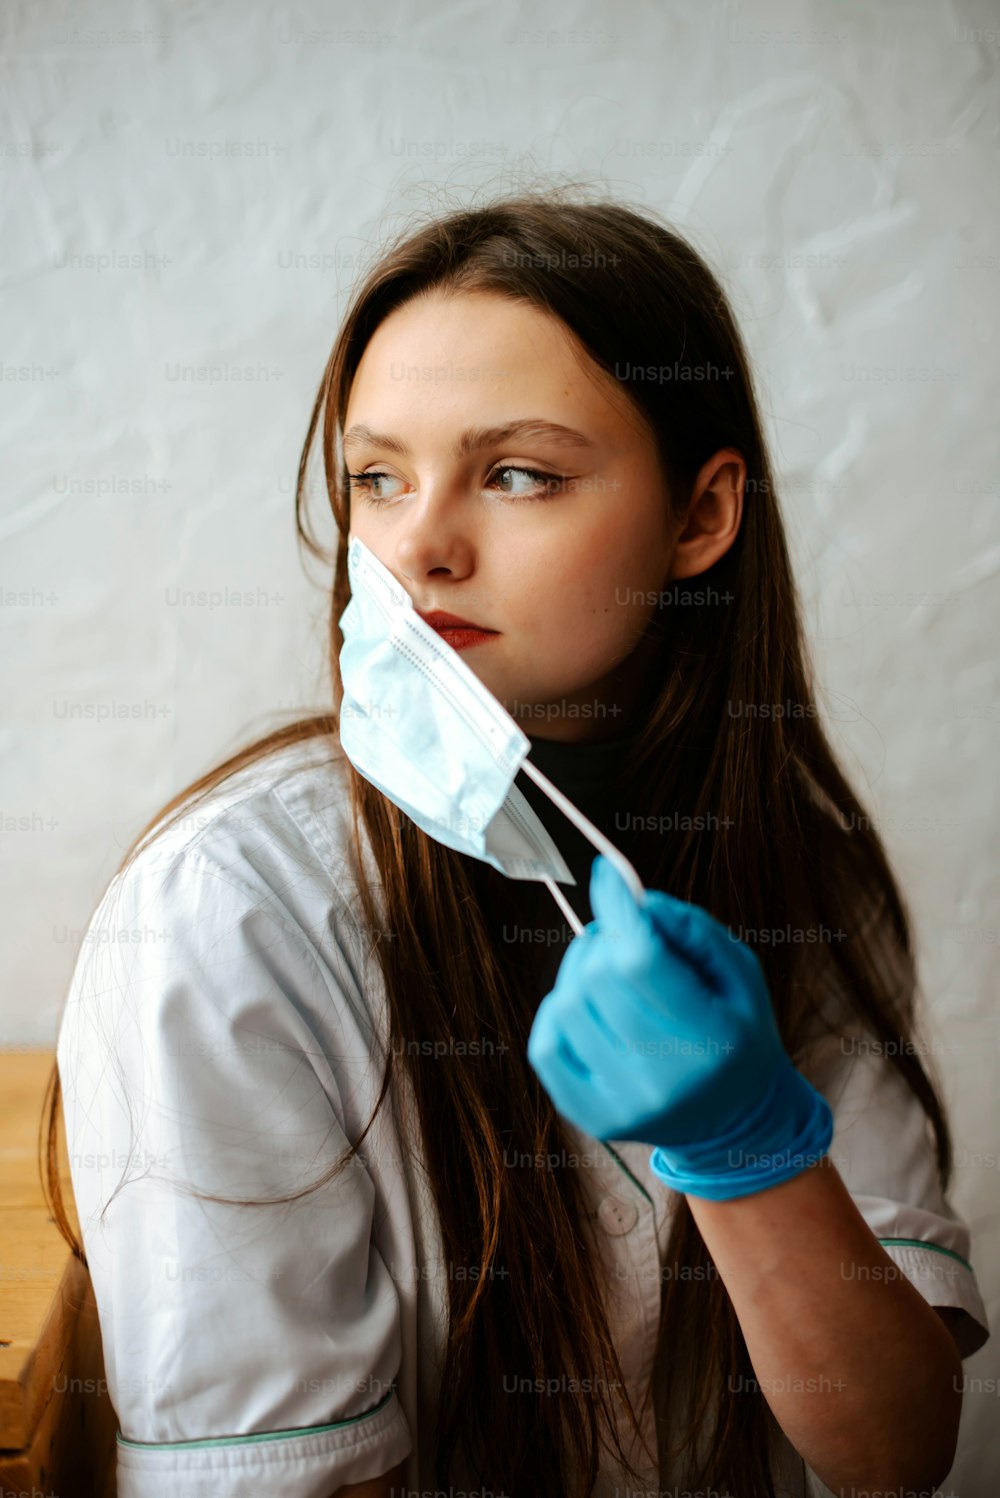 Una mujer con una camisa blanca y guantes azules sostiene una máscara quirúrgica sobre su boca